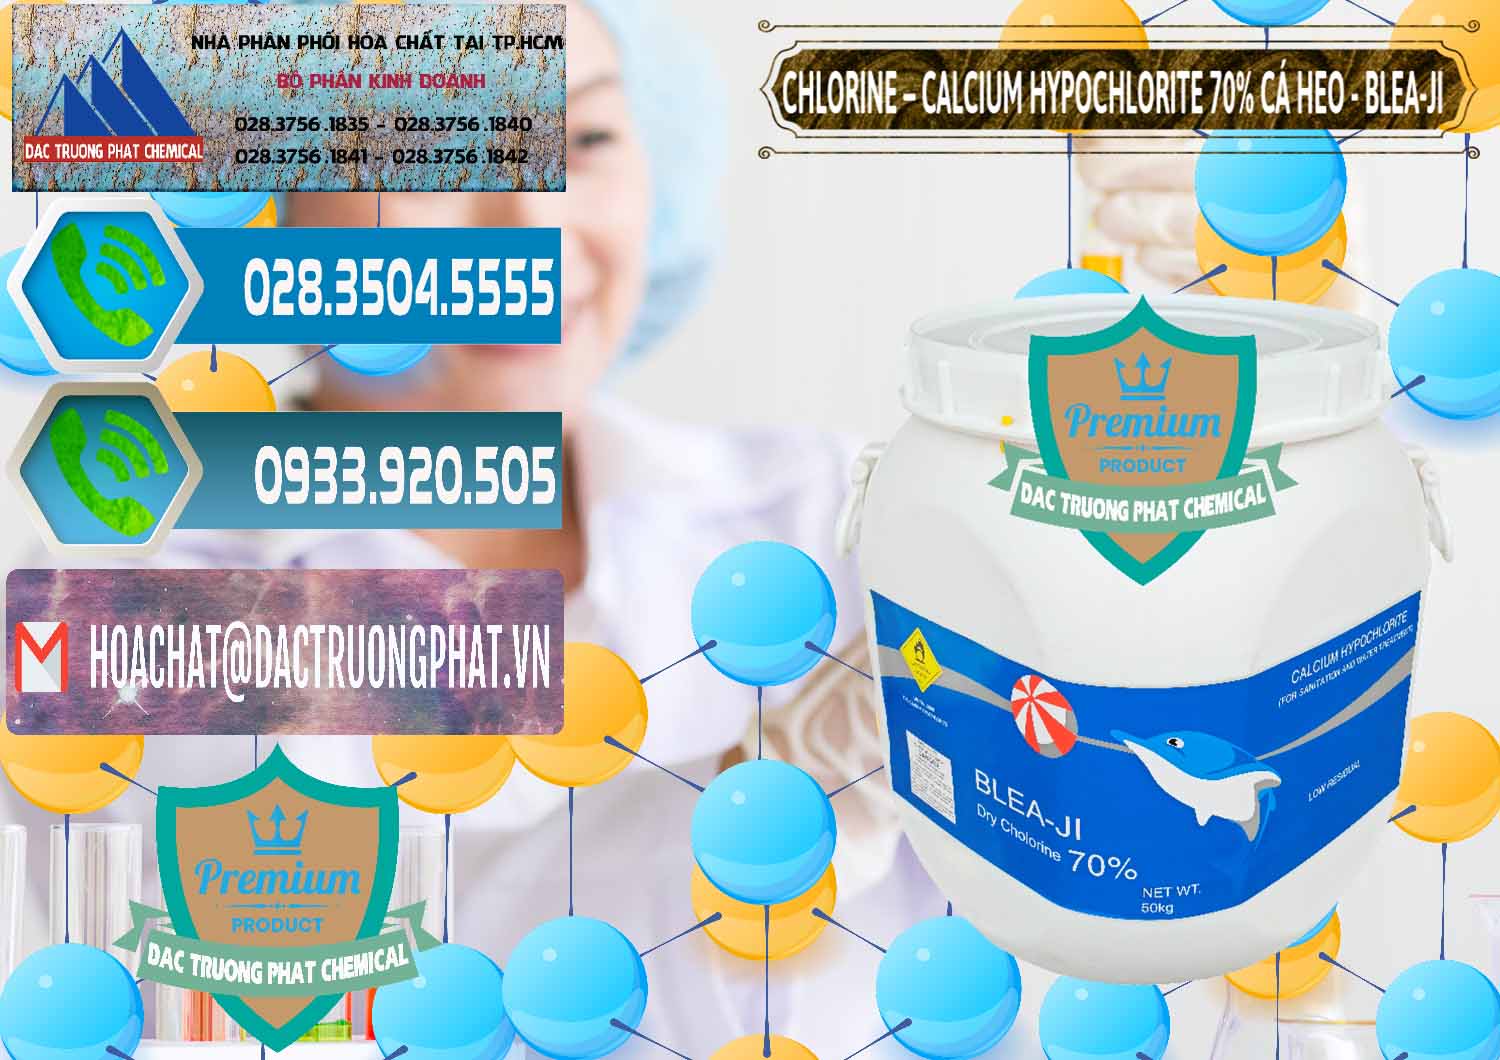 Kinh doanh và bán Clorin - Chlorine Cá Heo 70% Blea-Ji Trung Quốc China - 0056 - Nơi cung cấp _ phân phối hóa chất tại TP.HCM - congtyhoachat.net